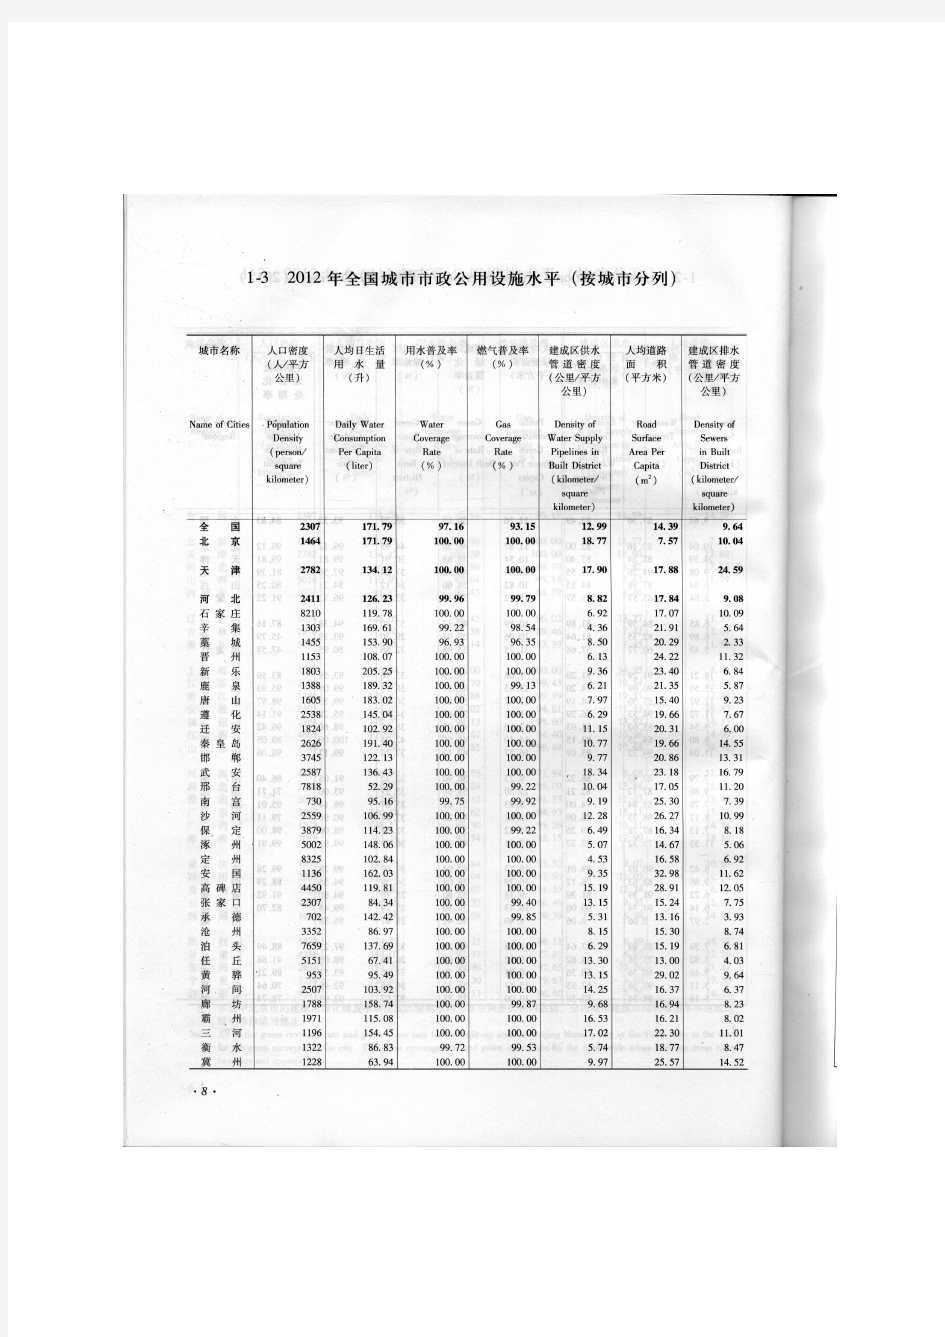 2012年中国城市建设统计年鉴-全国城市市政公用设施水平(按城市分列)